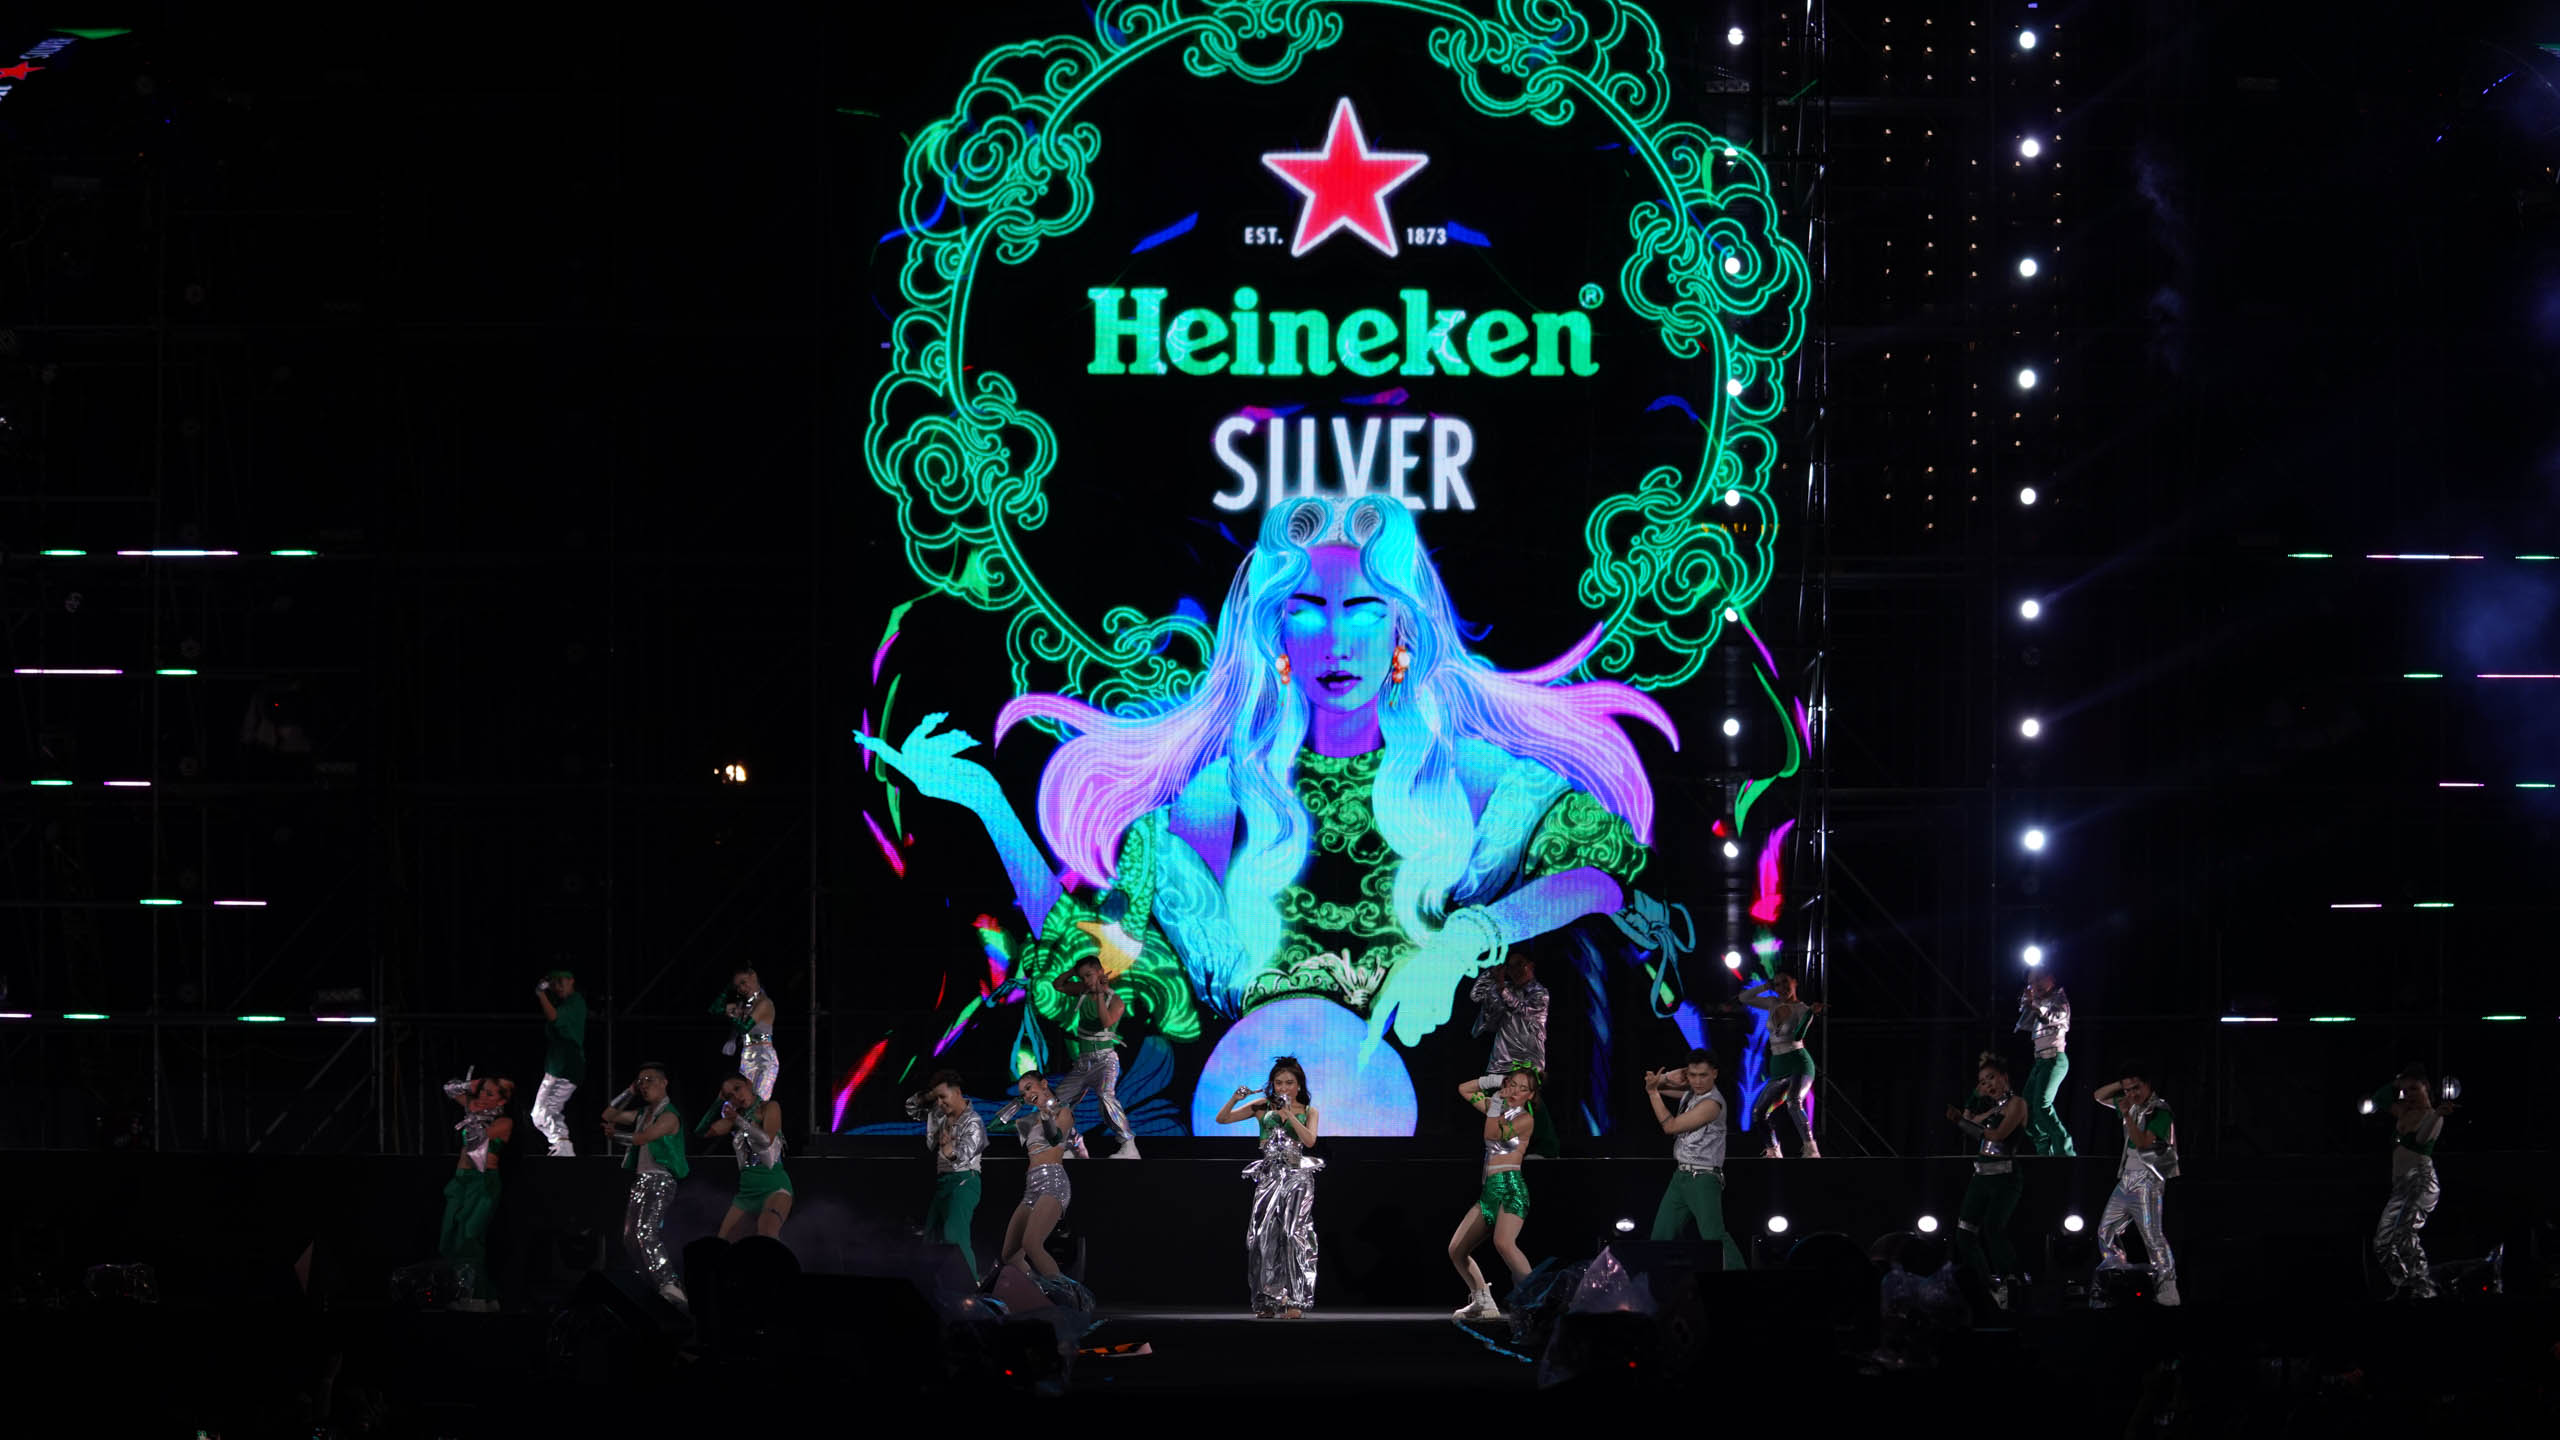 Heineken Silver Music Party – Đại nhạc hội trên không "nhẹ êm mà đậm chất" mang đến trải nghiệm âm nhạc thời thượng và công nghệ đồ họa độc đáo